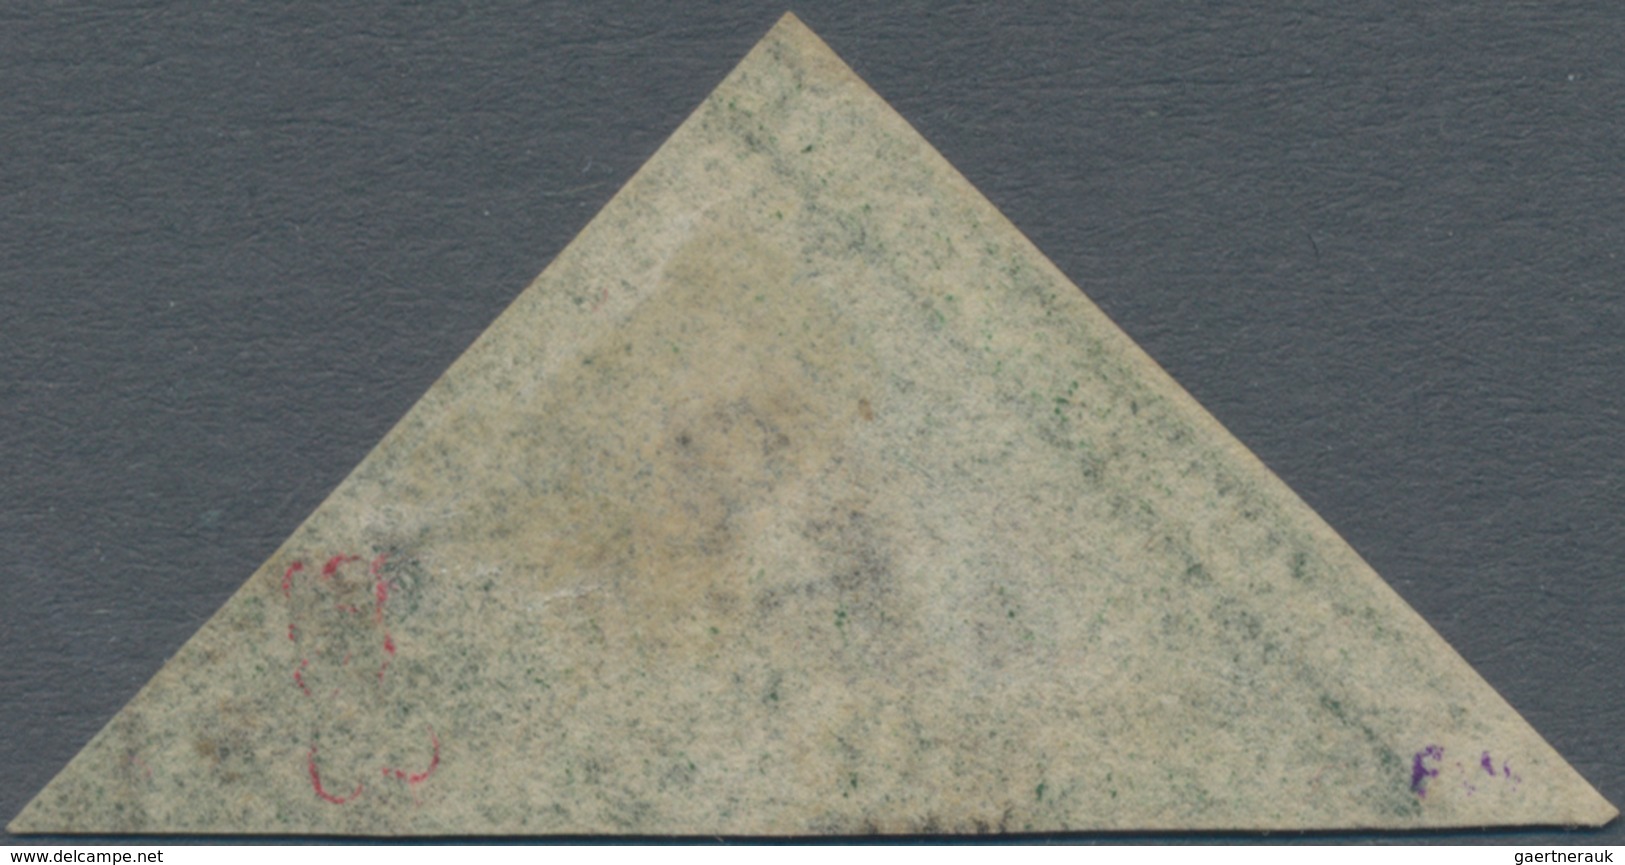 Kap Der Guten Hoffnung: 1859, Perkins 1 Shilling Darkgreen, Full Margins, Colorful, Signed Twice, SG - Cap De Bonne Espérance (1853-1904)